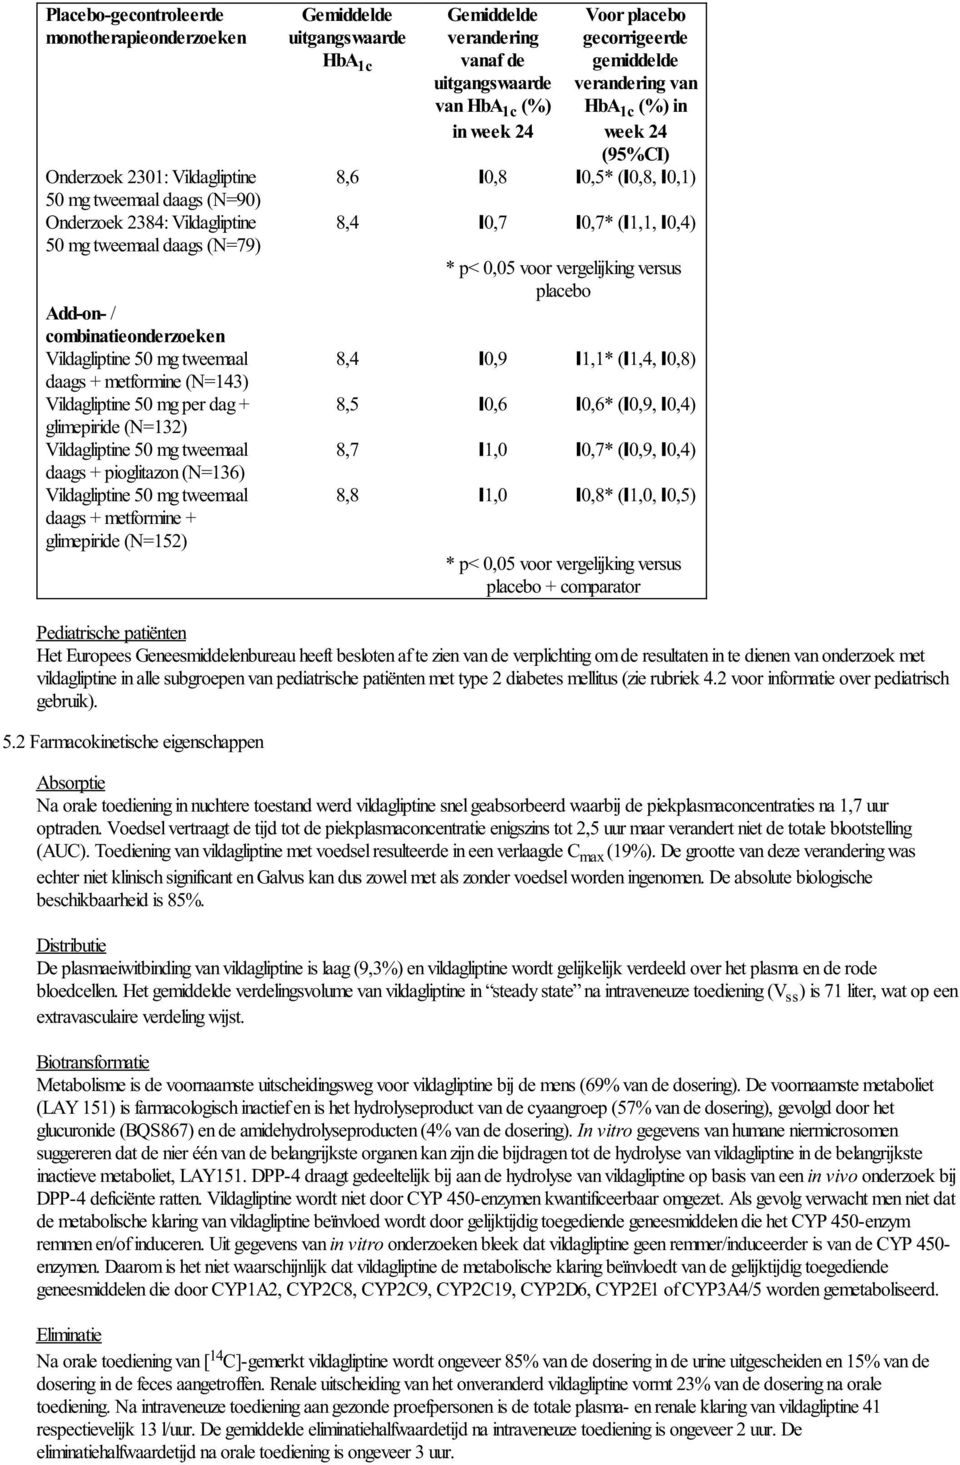 metformine + glimepiride (N=152) Gemiddelde uitgangswaarde HbA 1c Gemiddelde verandering vanaf de uitgangswaarde van HbA 1c (%) in week 24 Voor placebo gecorrigeerde gemiddelde verandering van HbA 1c